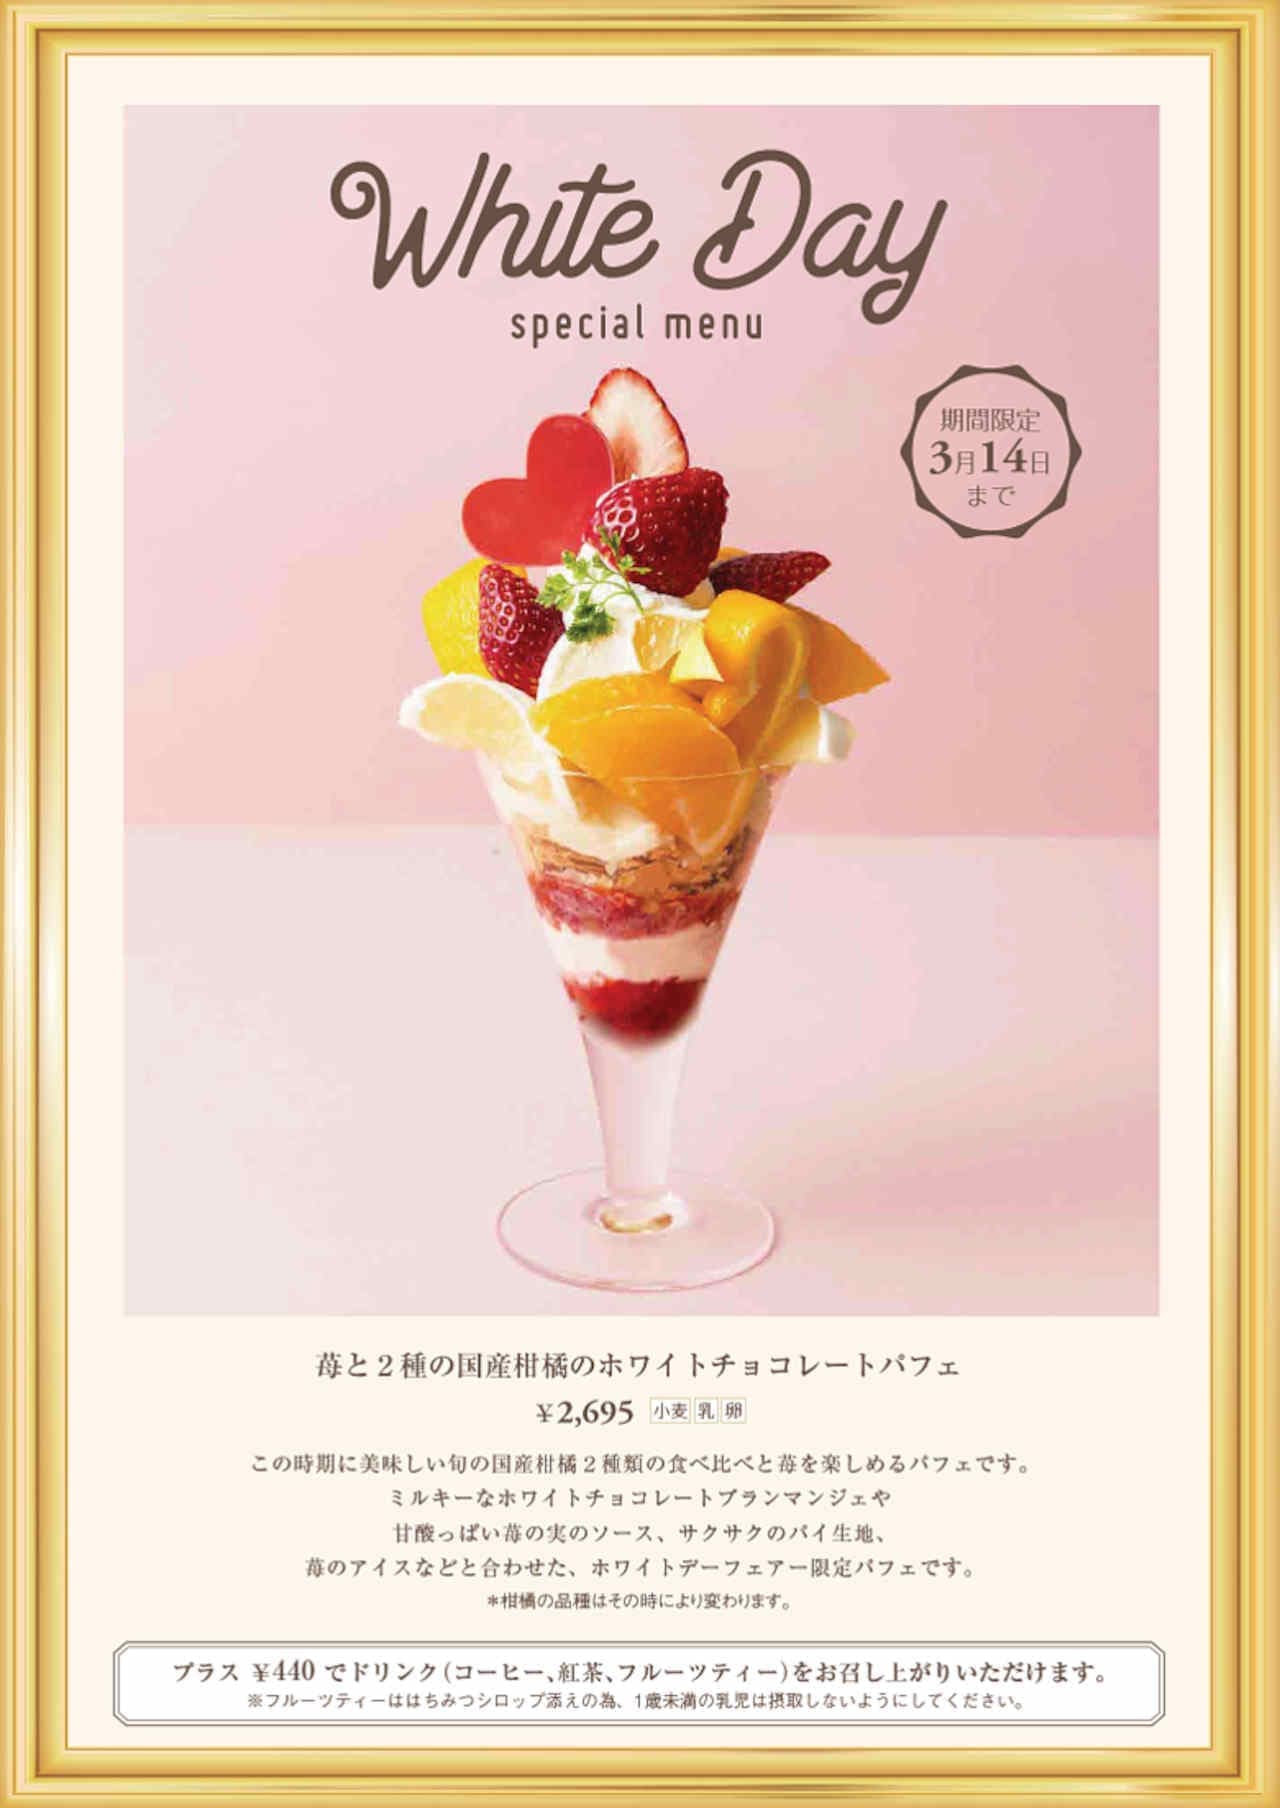 京橋千疋屋「苺と2種の国産柑橘のホワイトチョコレートパフェ」